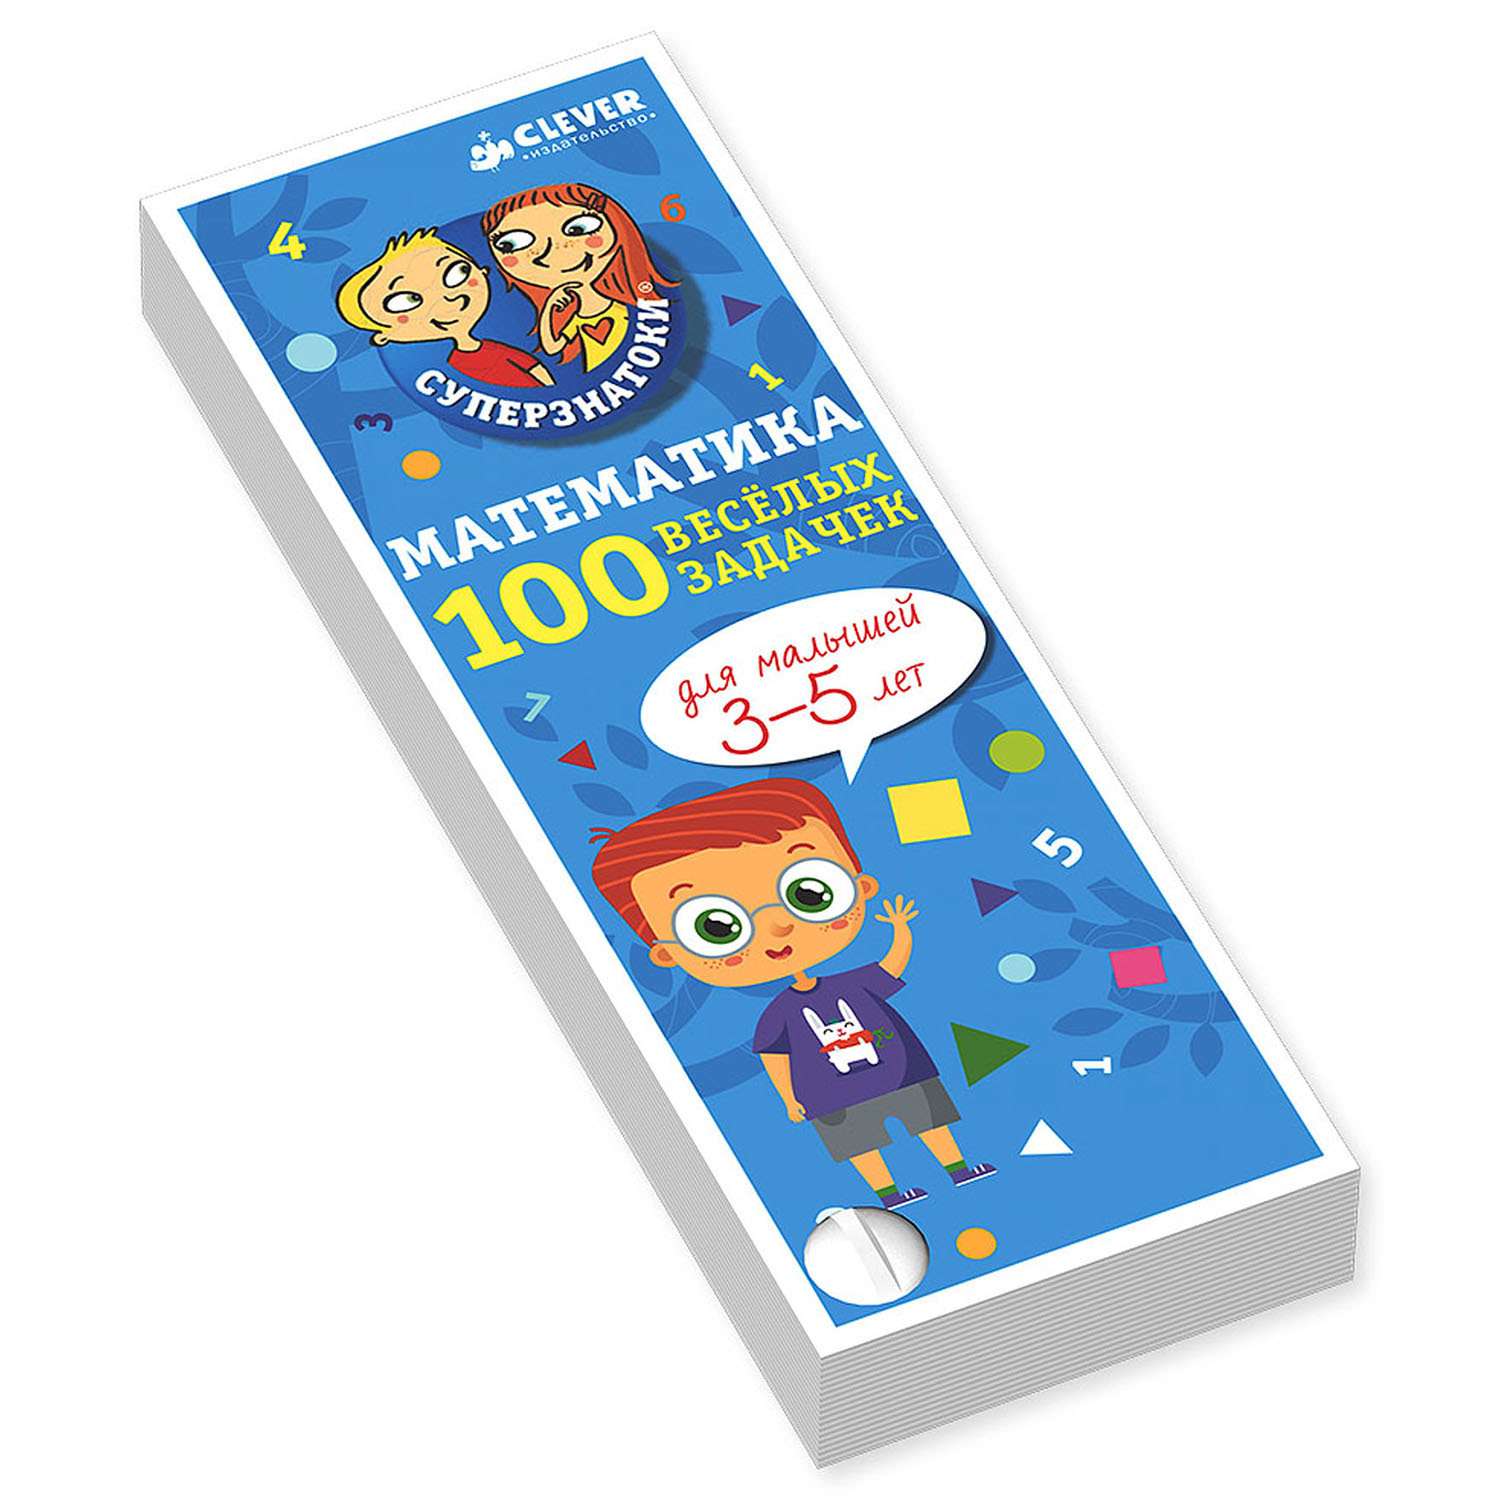 Книга Clever ВК. Суперзнатоки. Математика для малышей. 100 весёлых задачек. 3-5 лет - фото 1